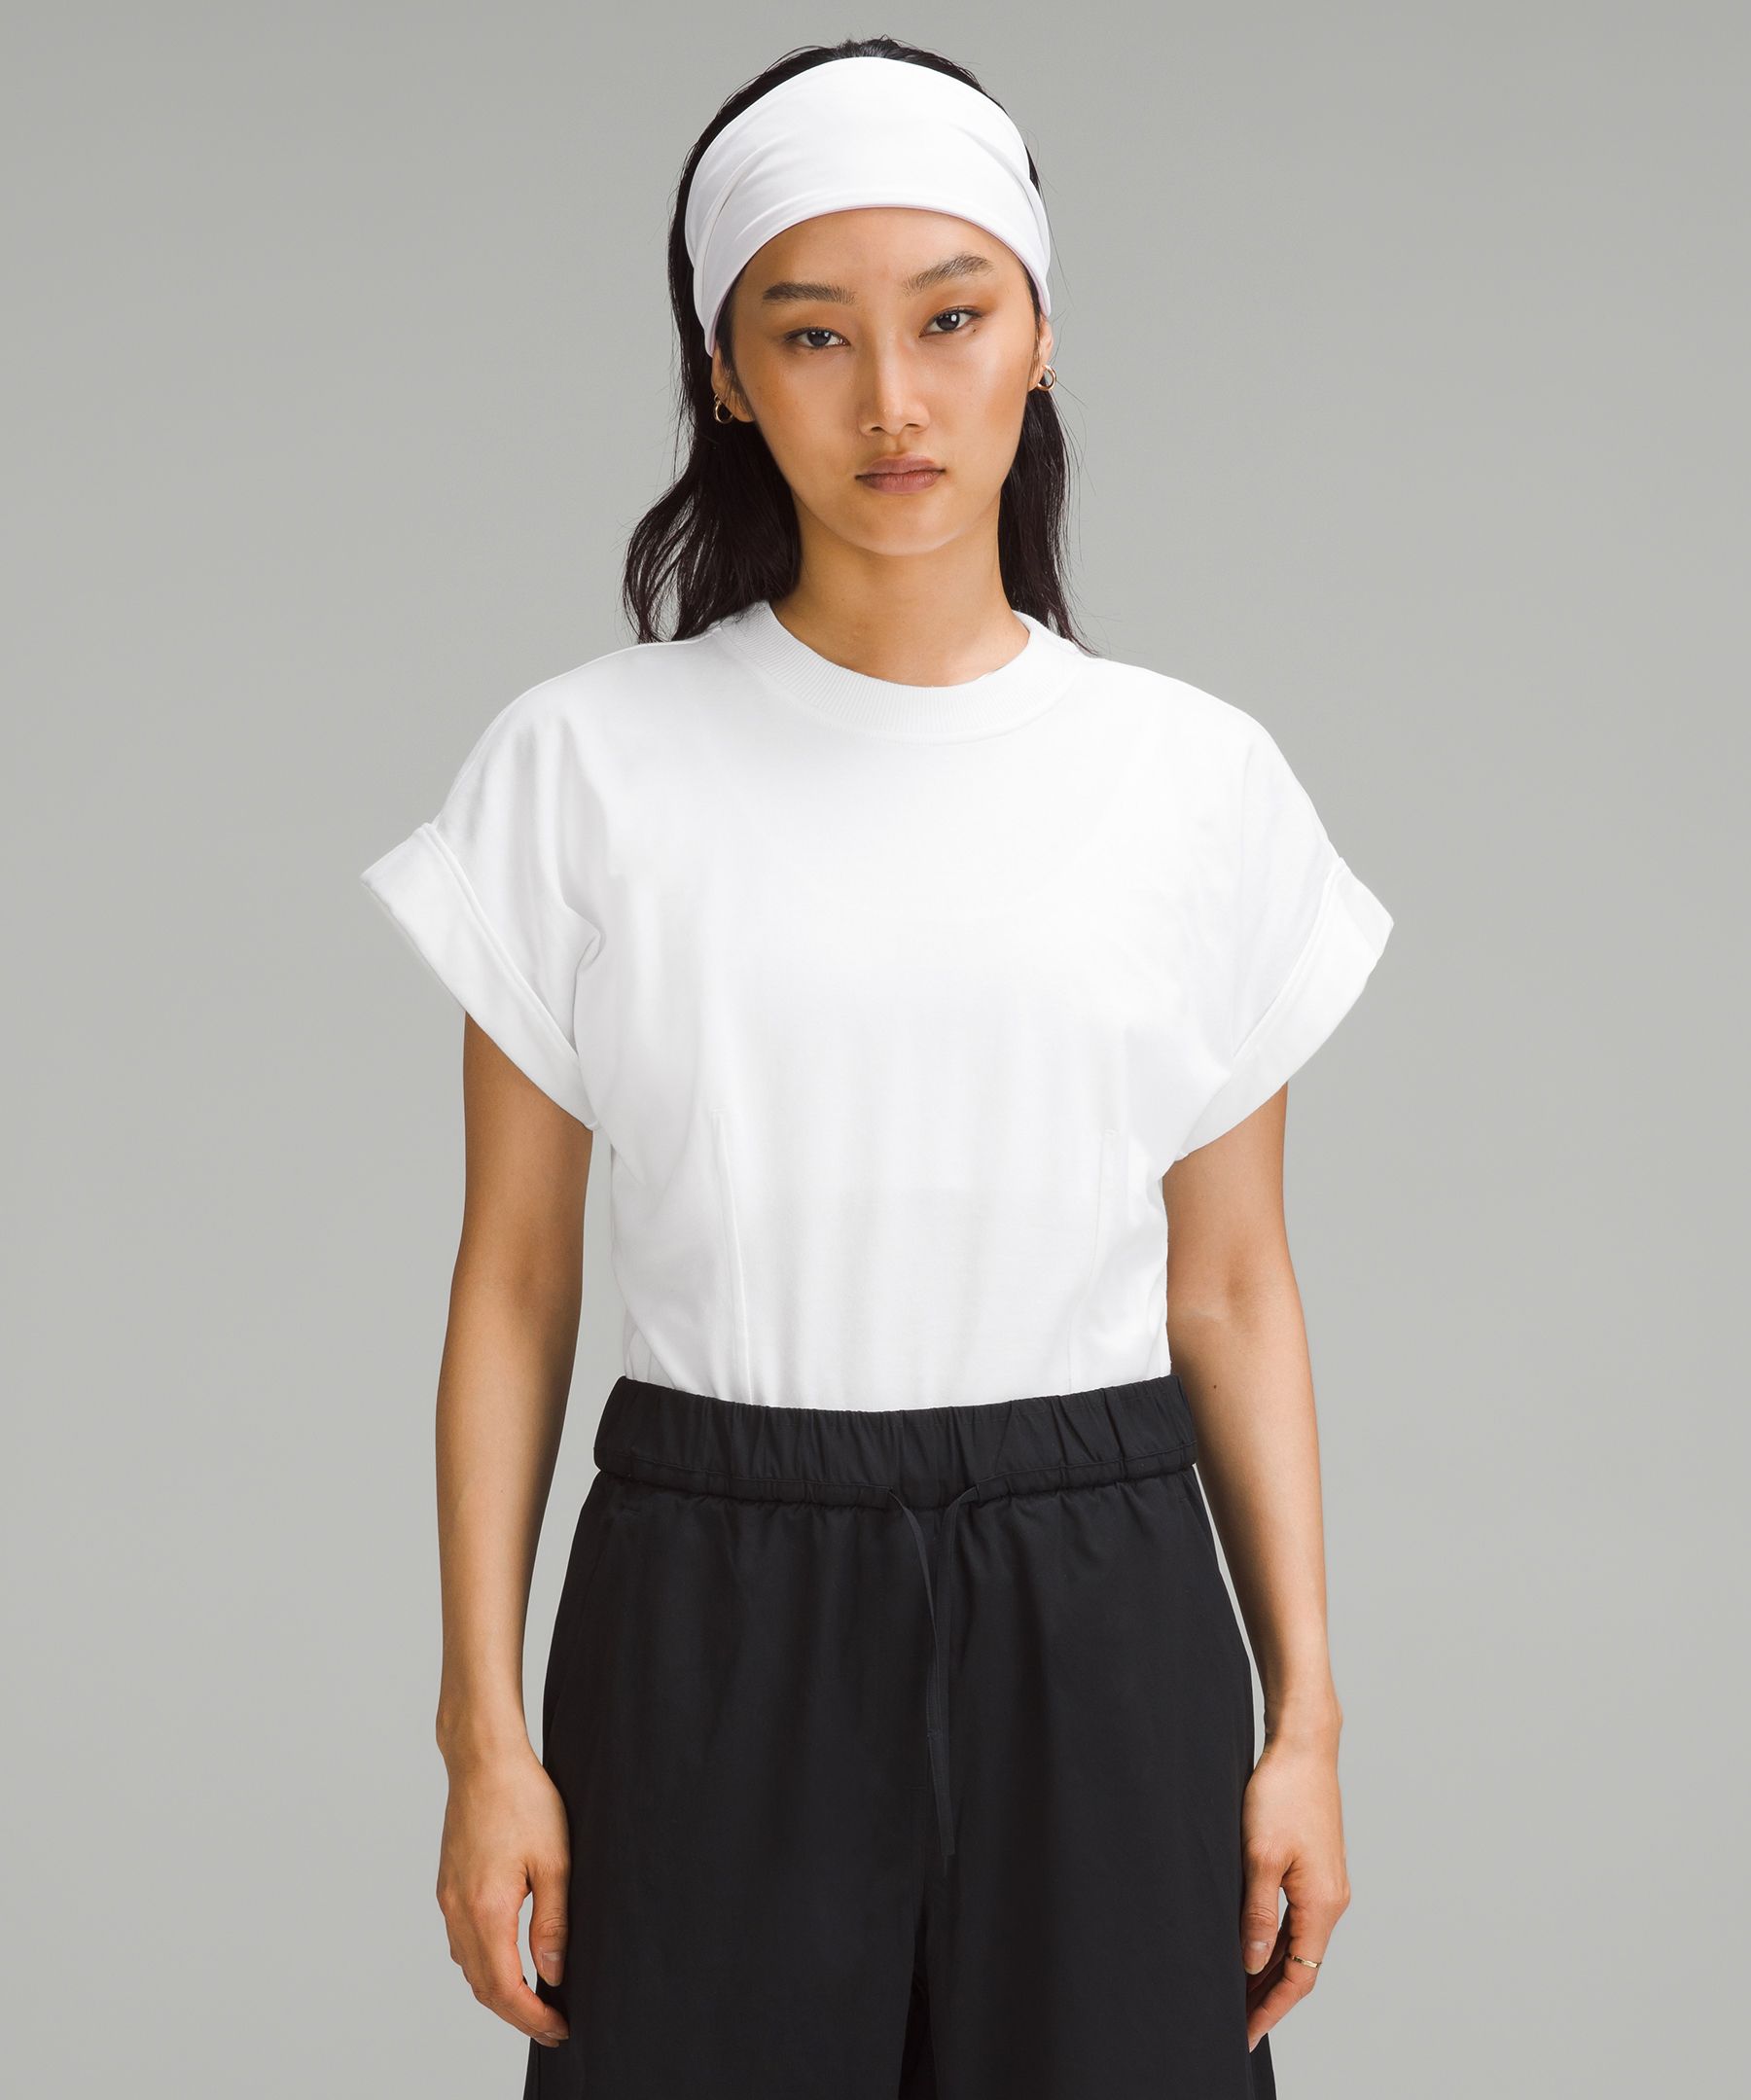 Heavyweight Cotton T-Shirt Bodysuit, Women's Dresses